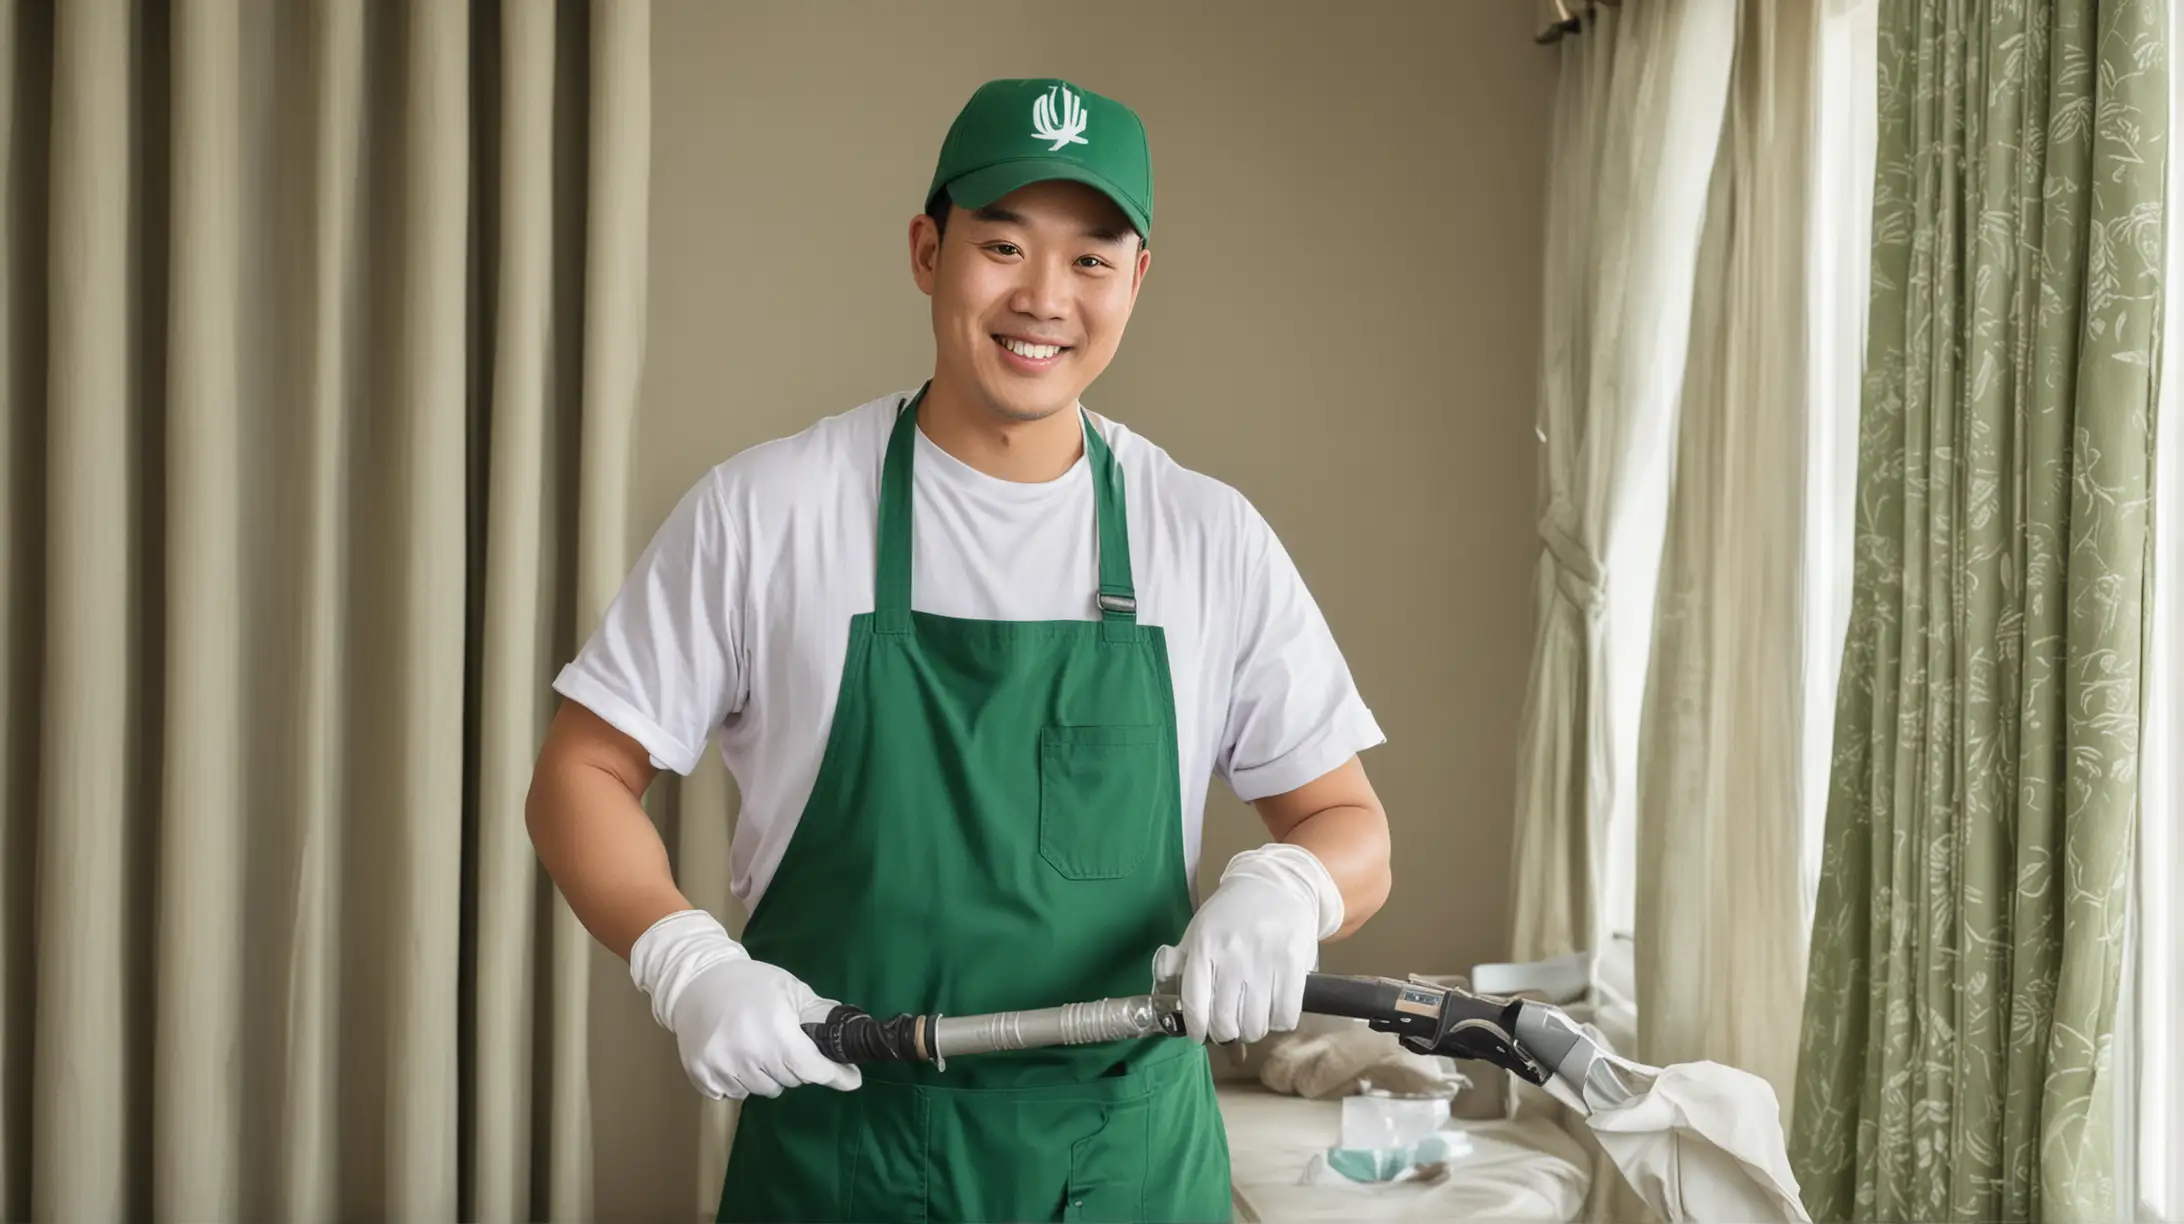 一位中国男家政，戴着棒球帽，戴着白色手套，拿着工具微笑着正在吸尘，穿着湖绿色围裙。背景是窗帘

